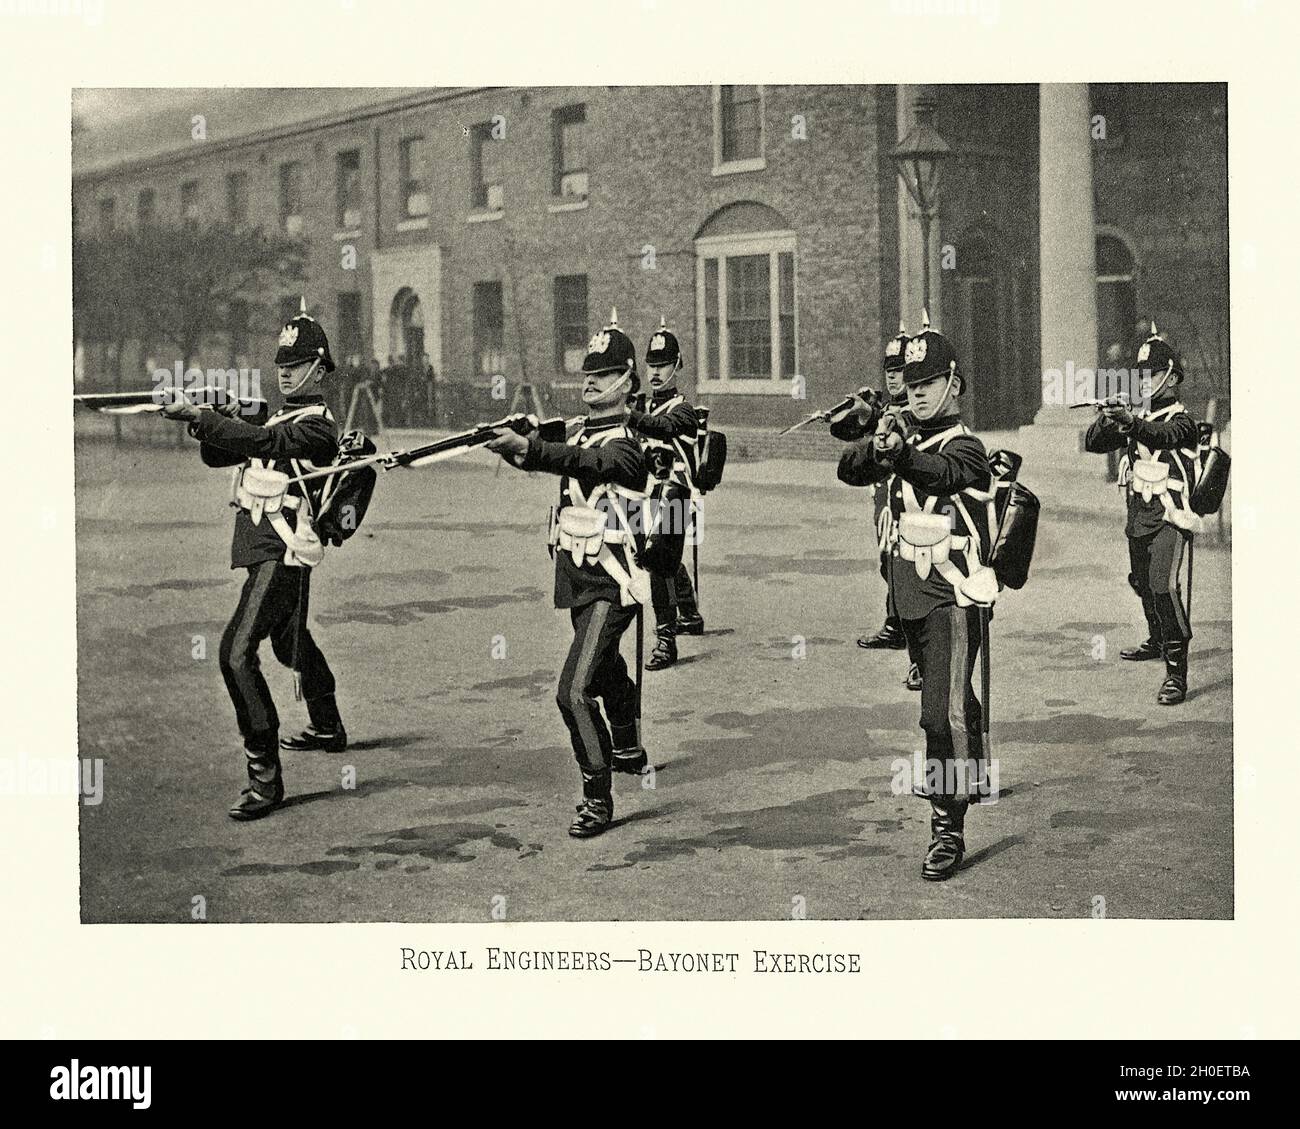 Vintage photogrtaph di soldati che fanno esercizio a baionetta, Royal Engineers esercito britannico, uniforme militare, vittoriano 19 ° secolo Foto Stock